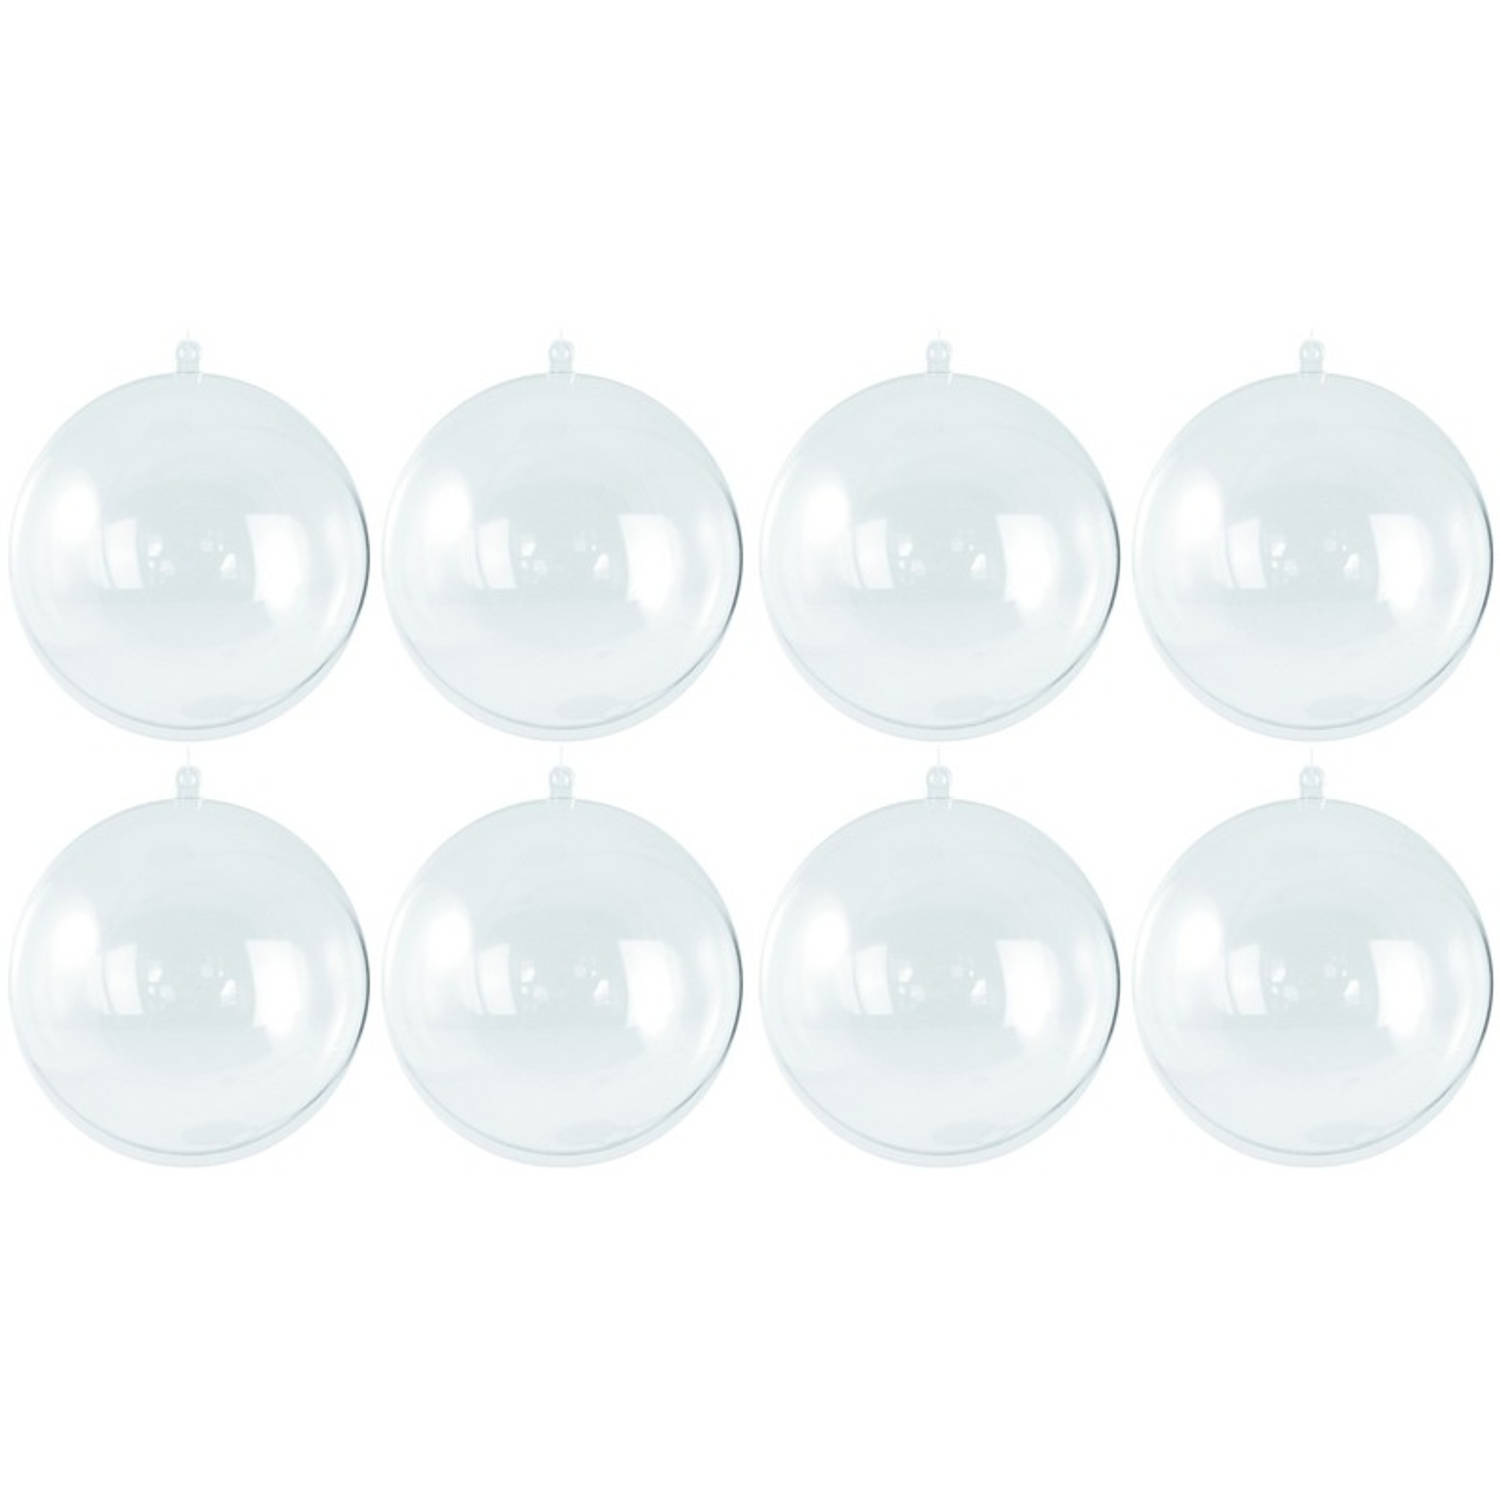 8x ransparante hobby-DIY kerstballen 7 cm Knutselen Kerstballen maken hobby materiaal-basis material